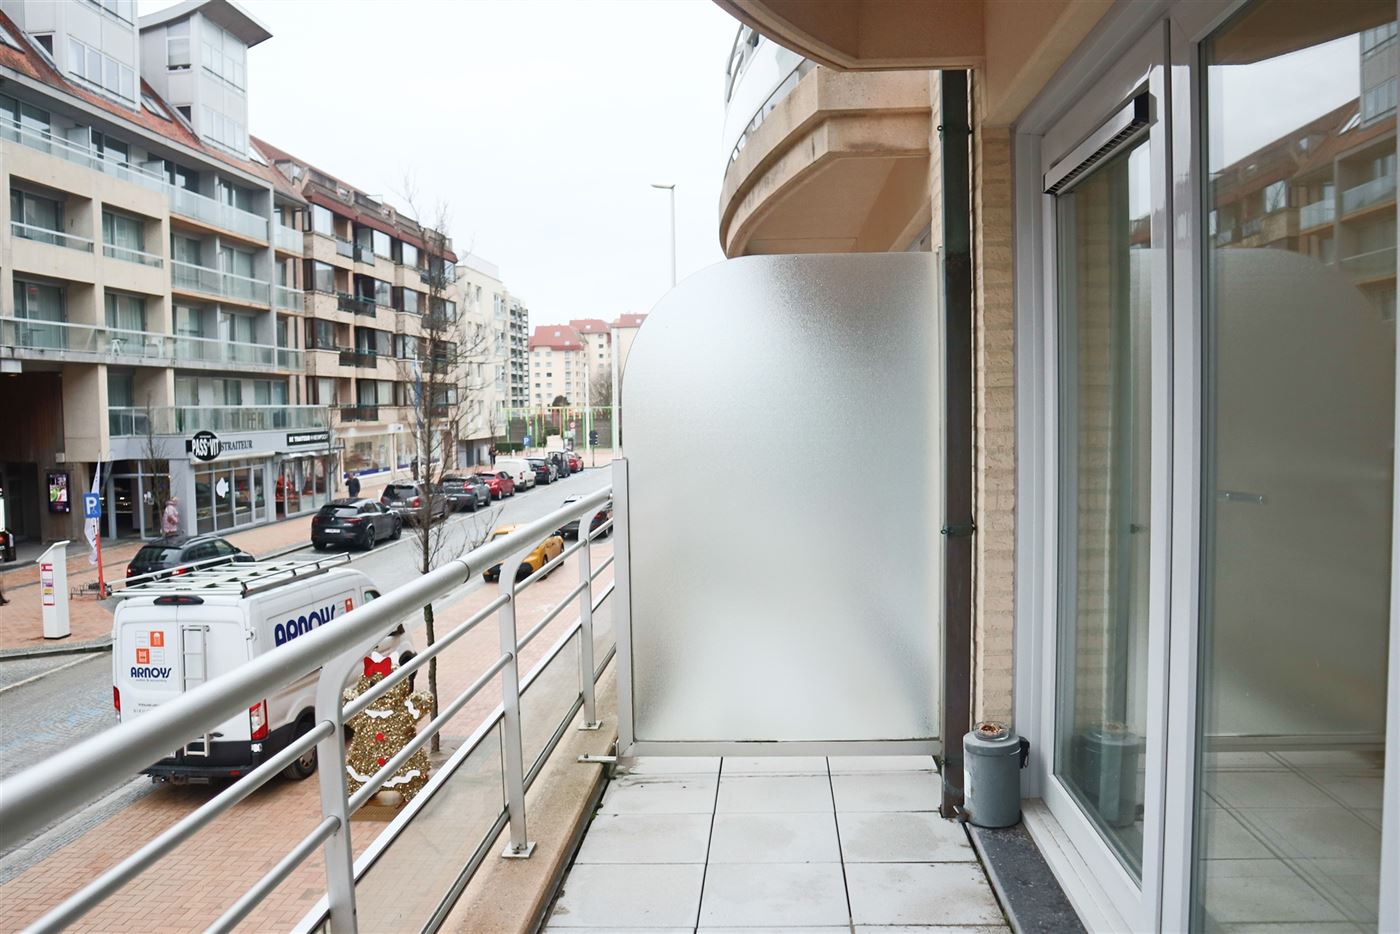 Res. Hof van Vlaanderen 272-0102 - Zonnig appartement met twee slaapkamers - Gelegen op de eerste verdieping in de winkelstraat aan de Sint Bernardusk...